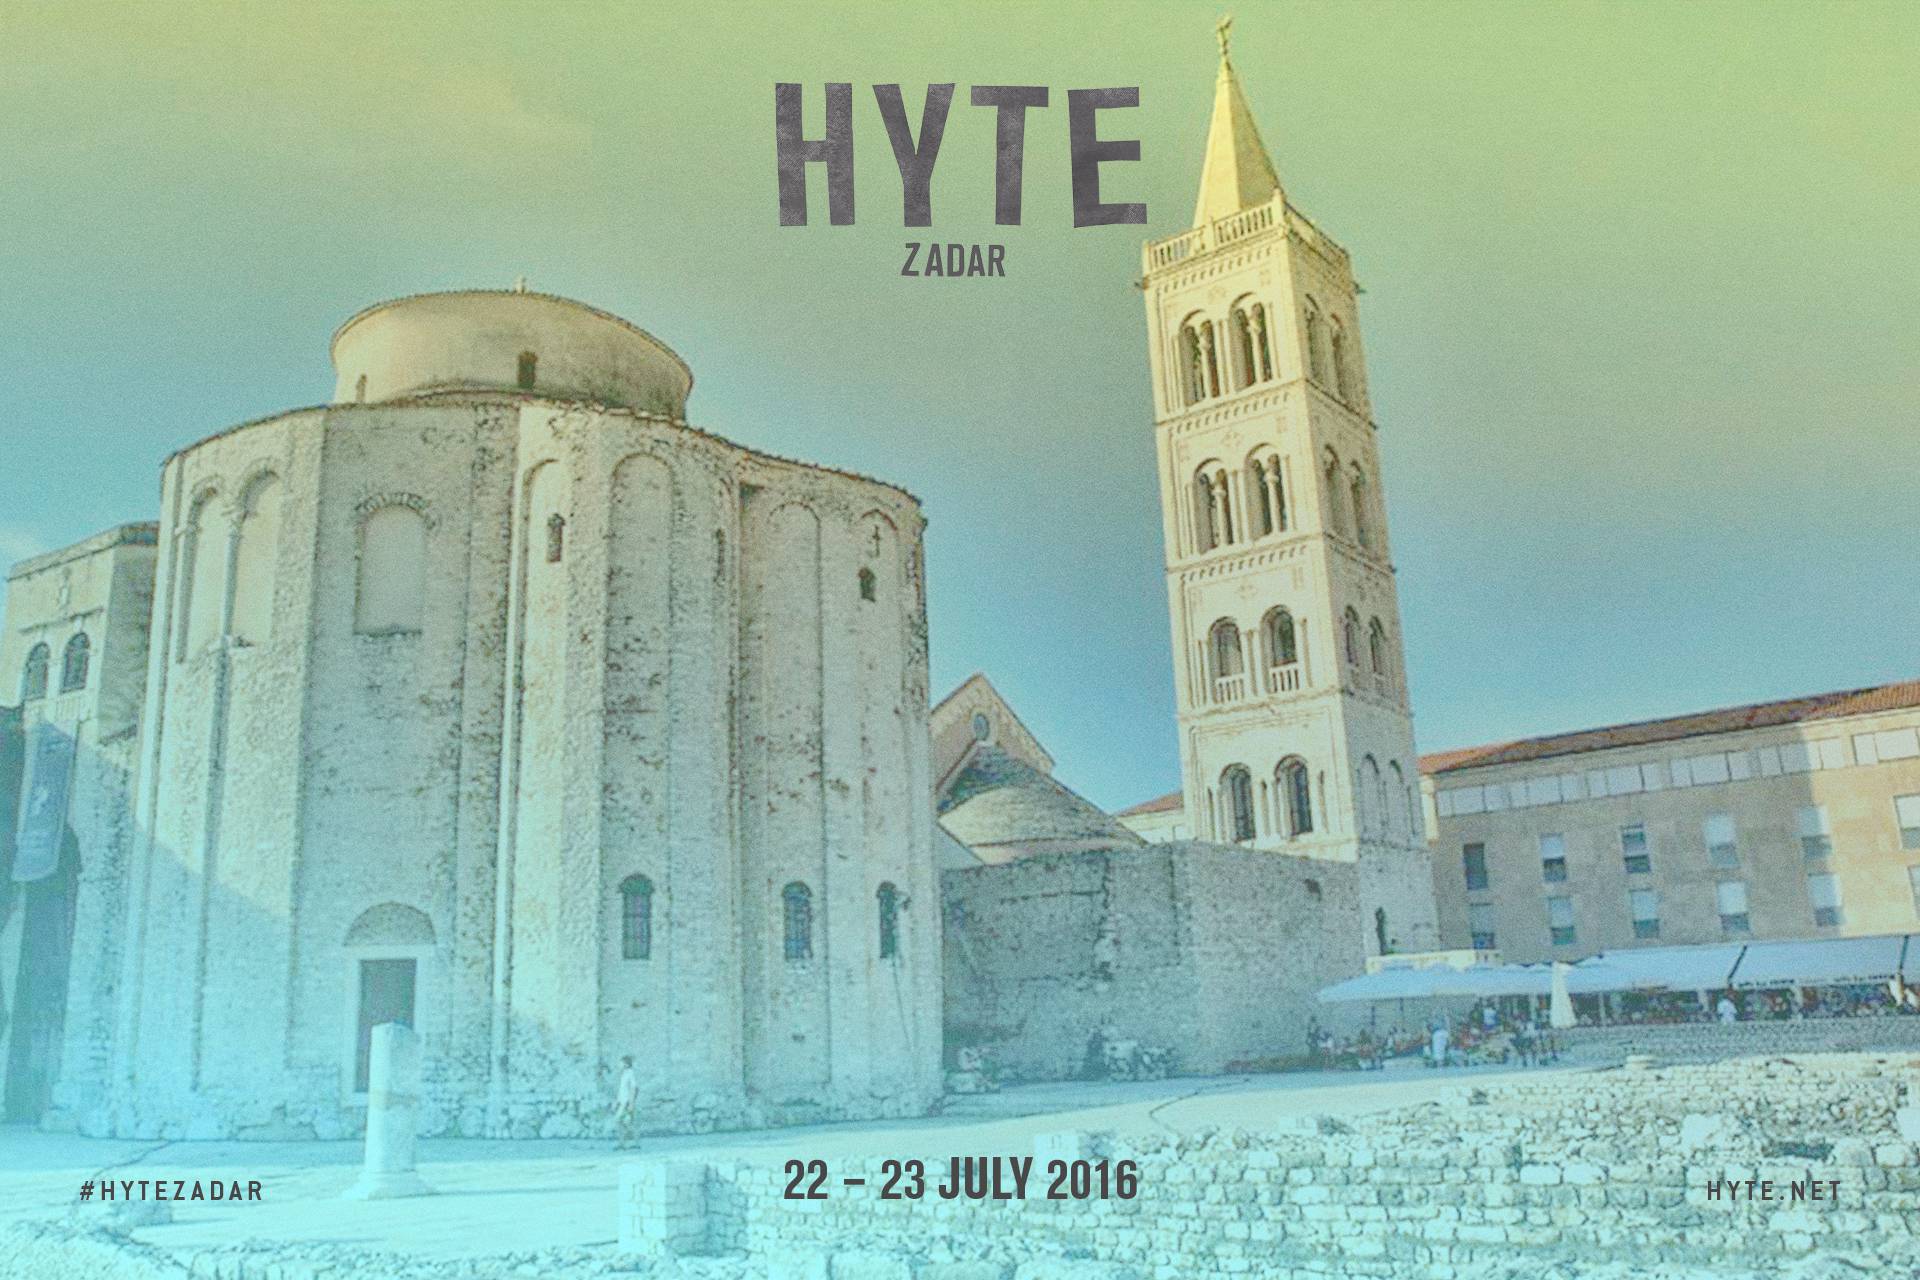 Završen Hyte u New Yorku; sljedeća destinacija je Zadar